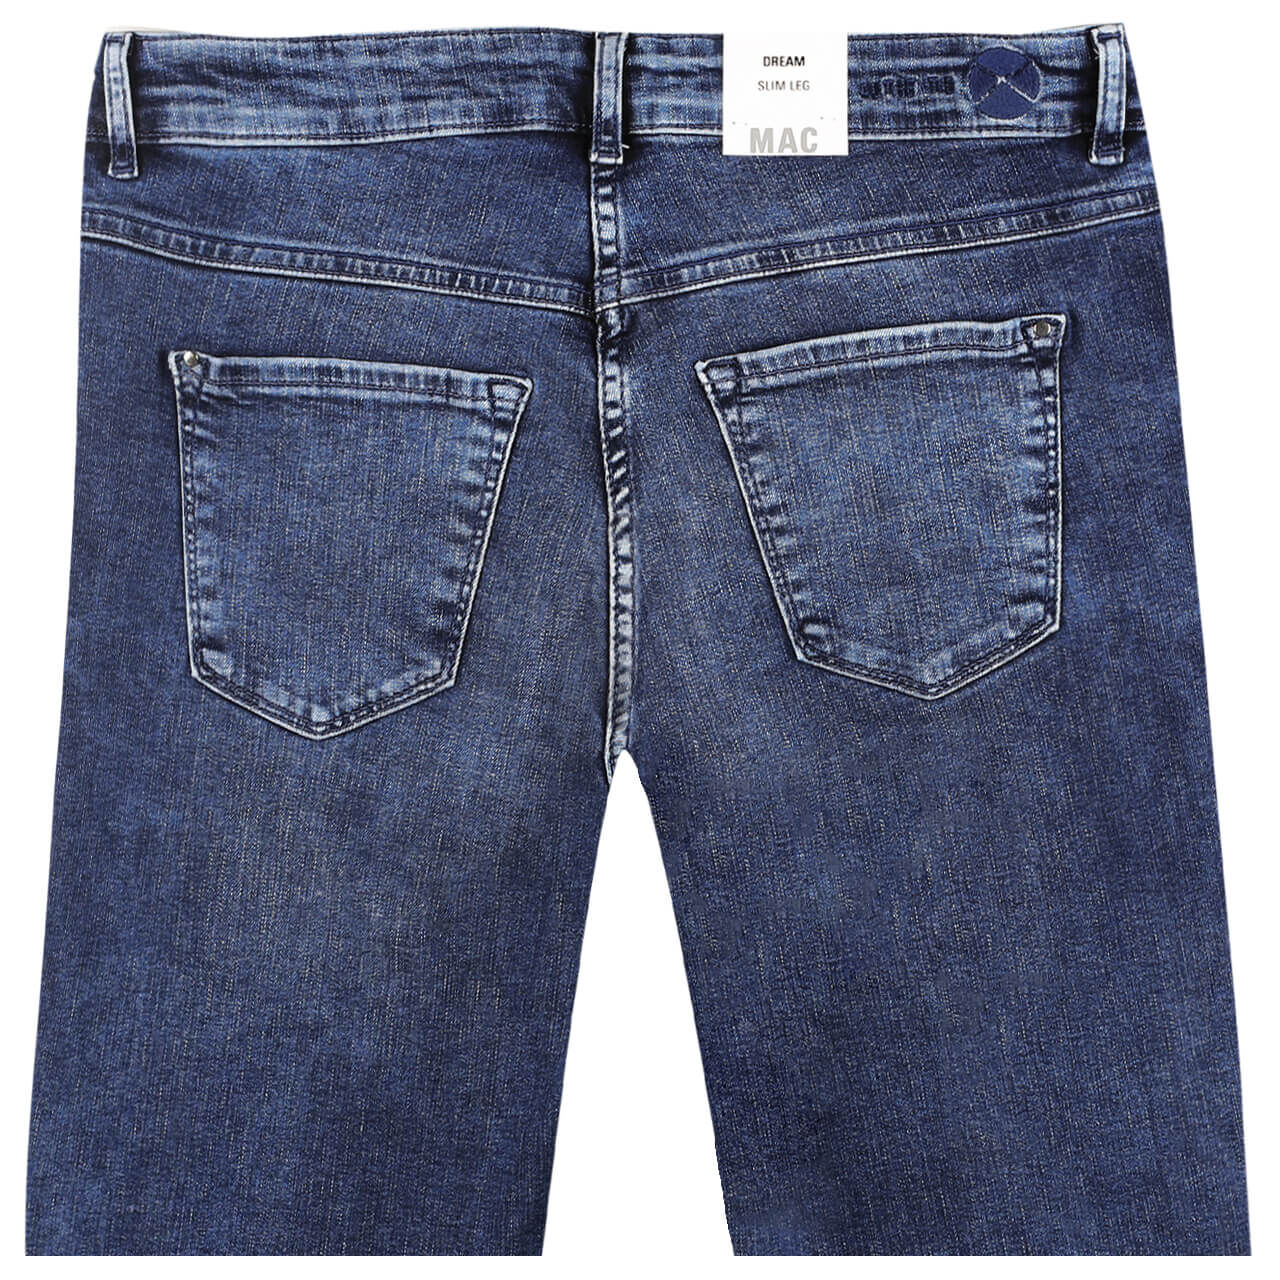 MAC Jeans Dream Slim für Damen in Mittelblau verwaschen, FarbNr.: D530